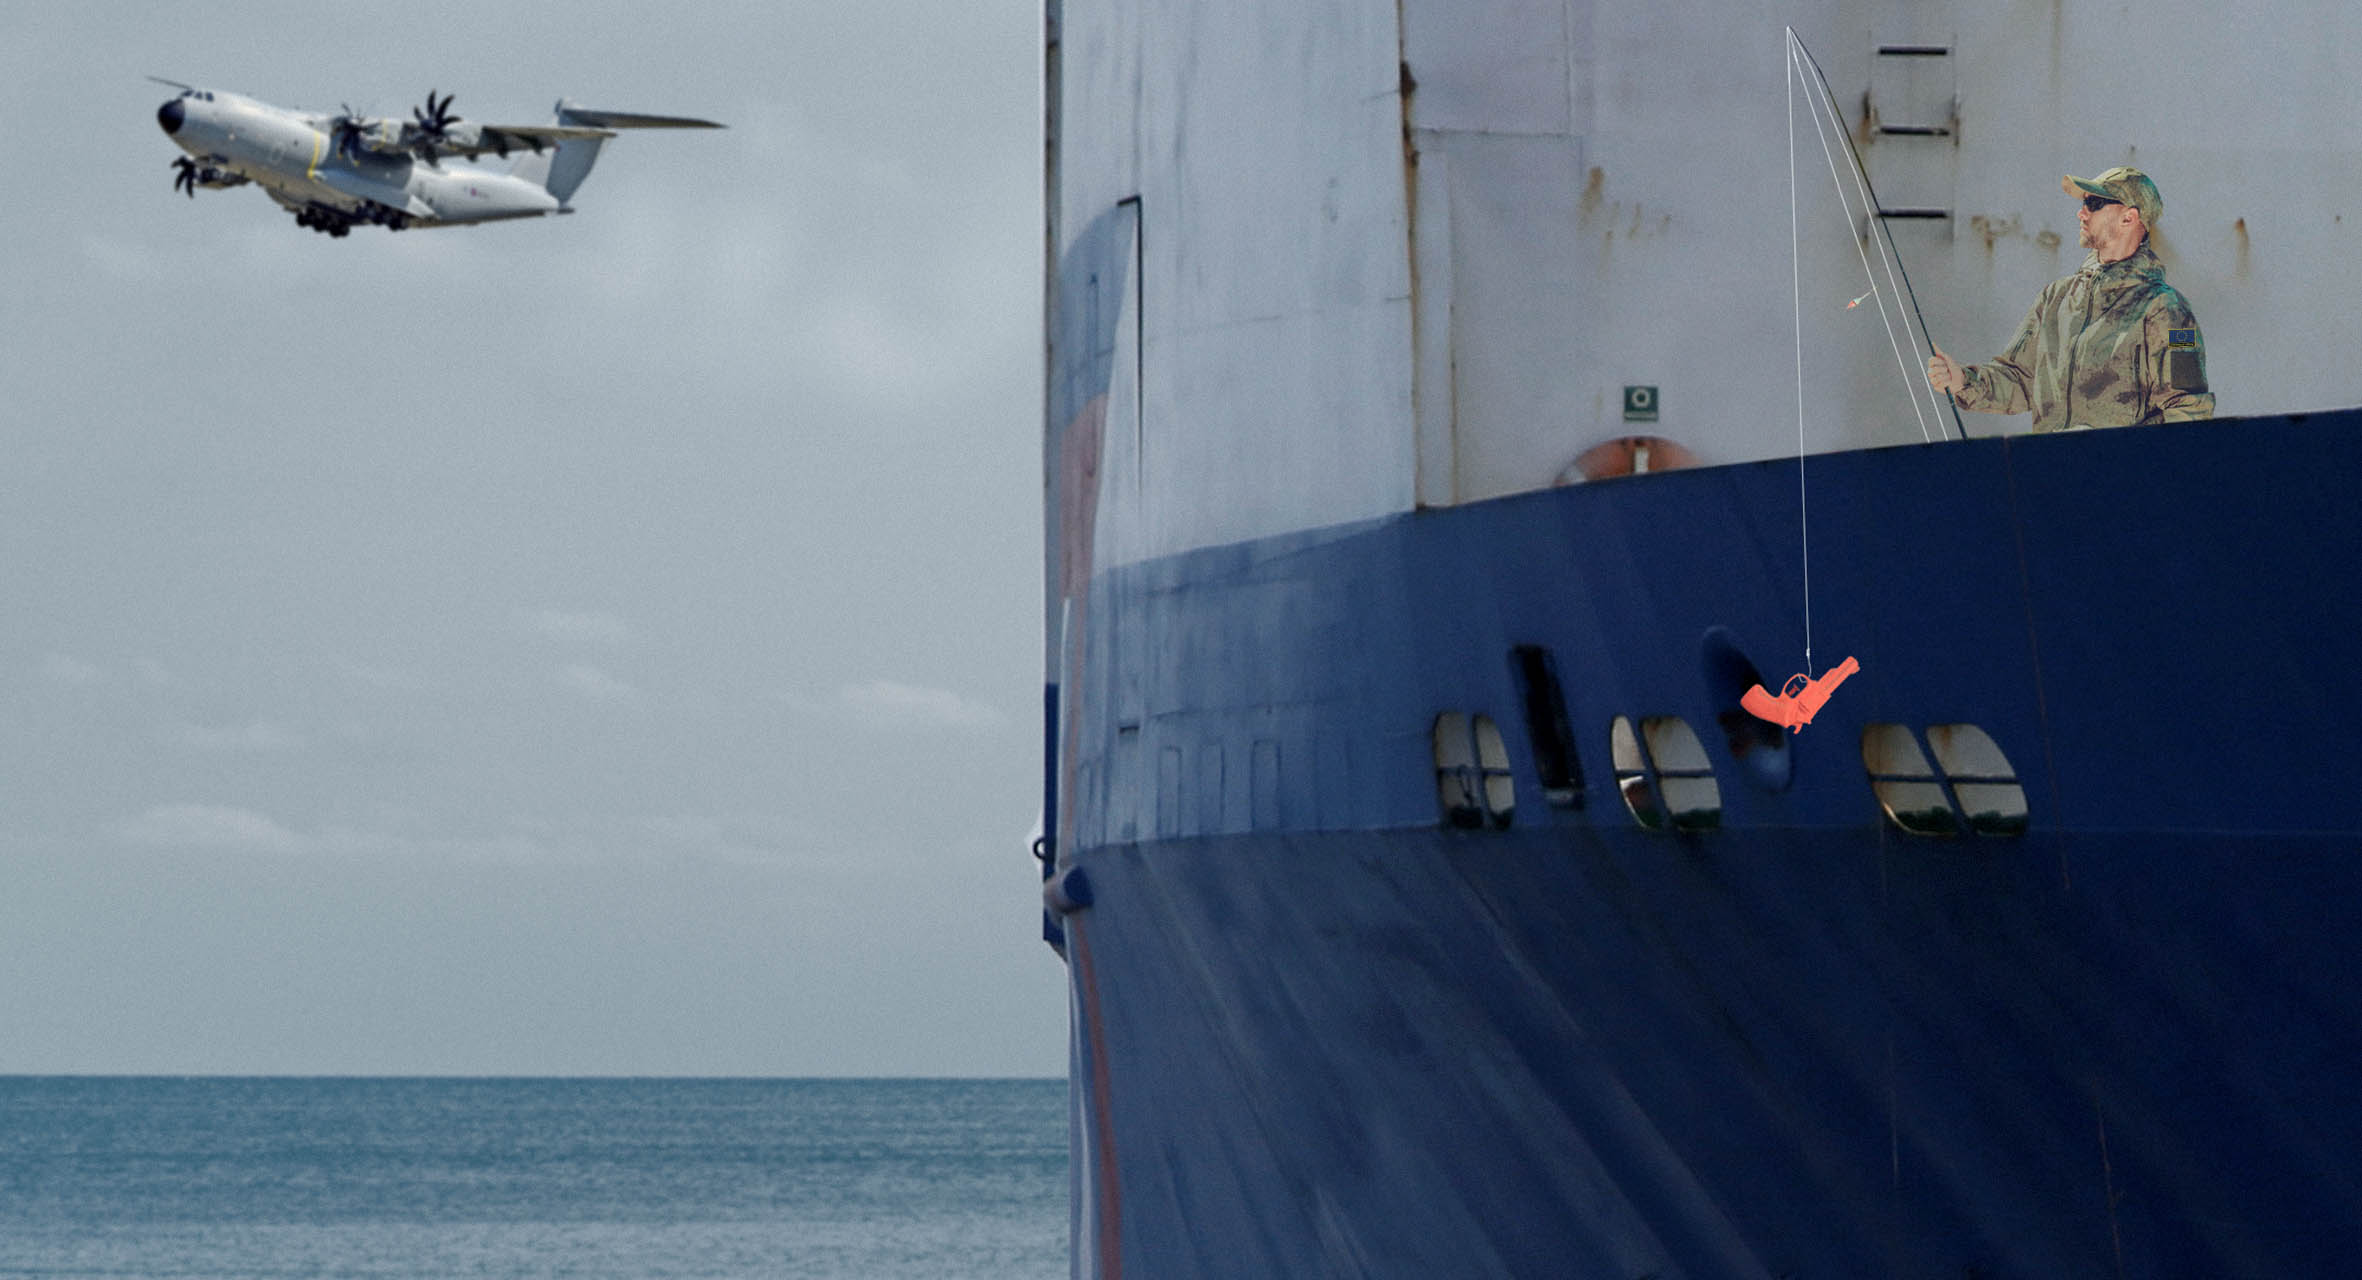 صورة سفينة أوروبية تنجح بتفعيل حظر دخول الأسلحة إلى ليبيا وتصادر مسدس ماء كان يطفو قبالة شواطئ بنغازي